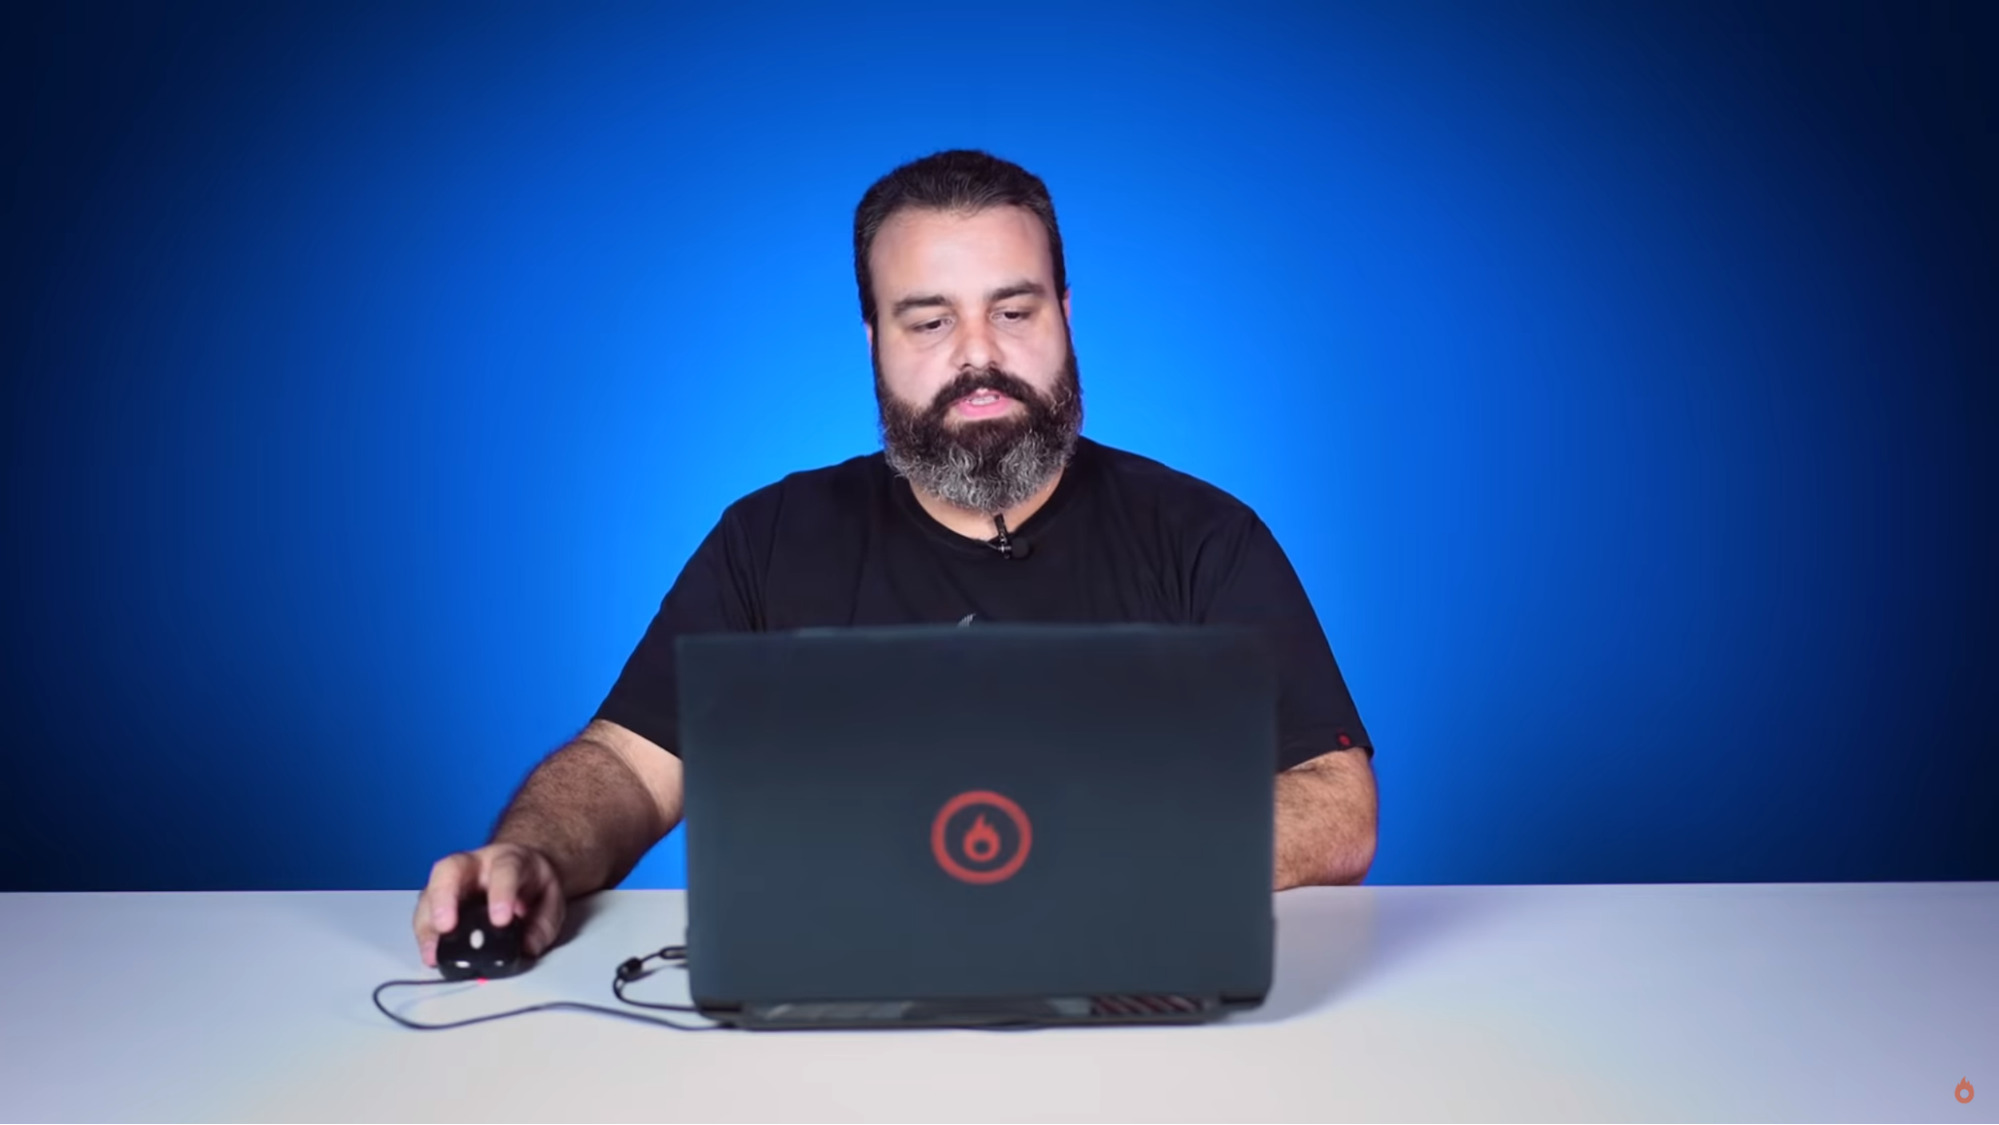 estudio de grabación de vídeo - imagen de un hombre frente a un ordenador